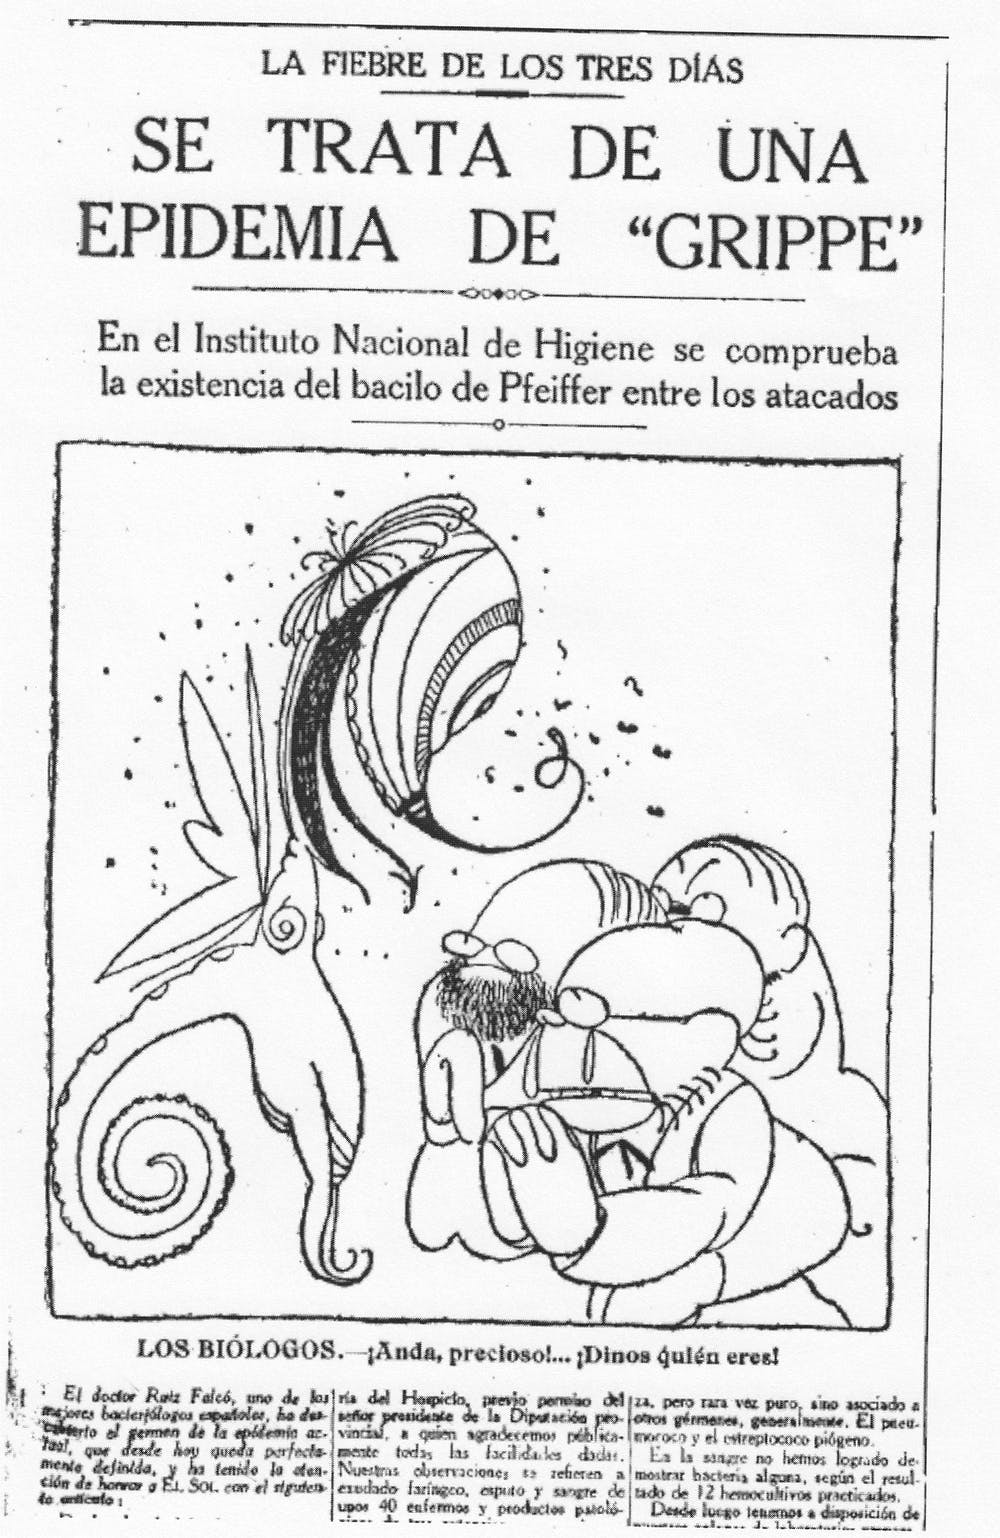 Vileta de Lluís Bagaría publicada en el diario El Sol el 7 de junio de 1918. Wikimedia Commons / El Sol